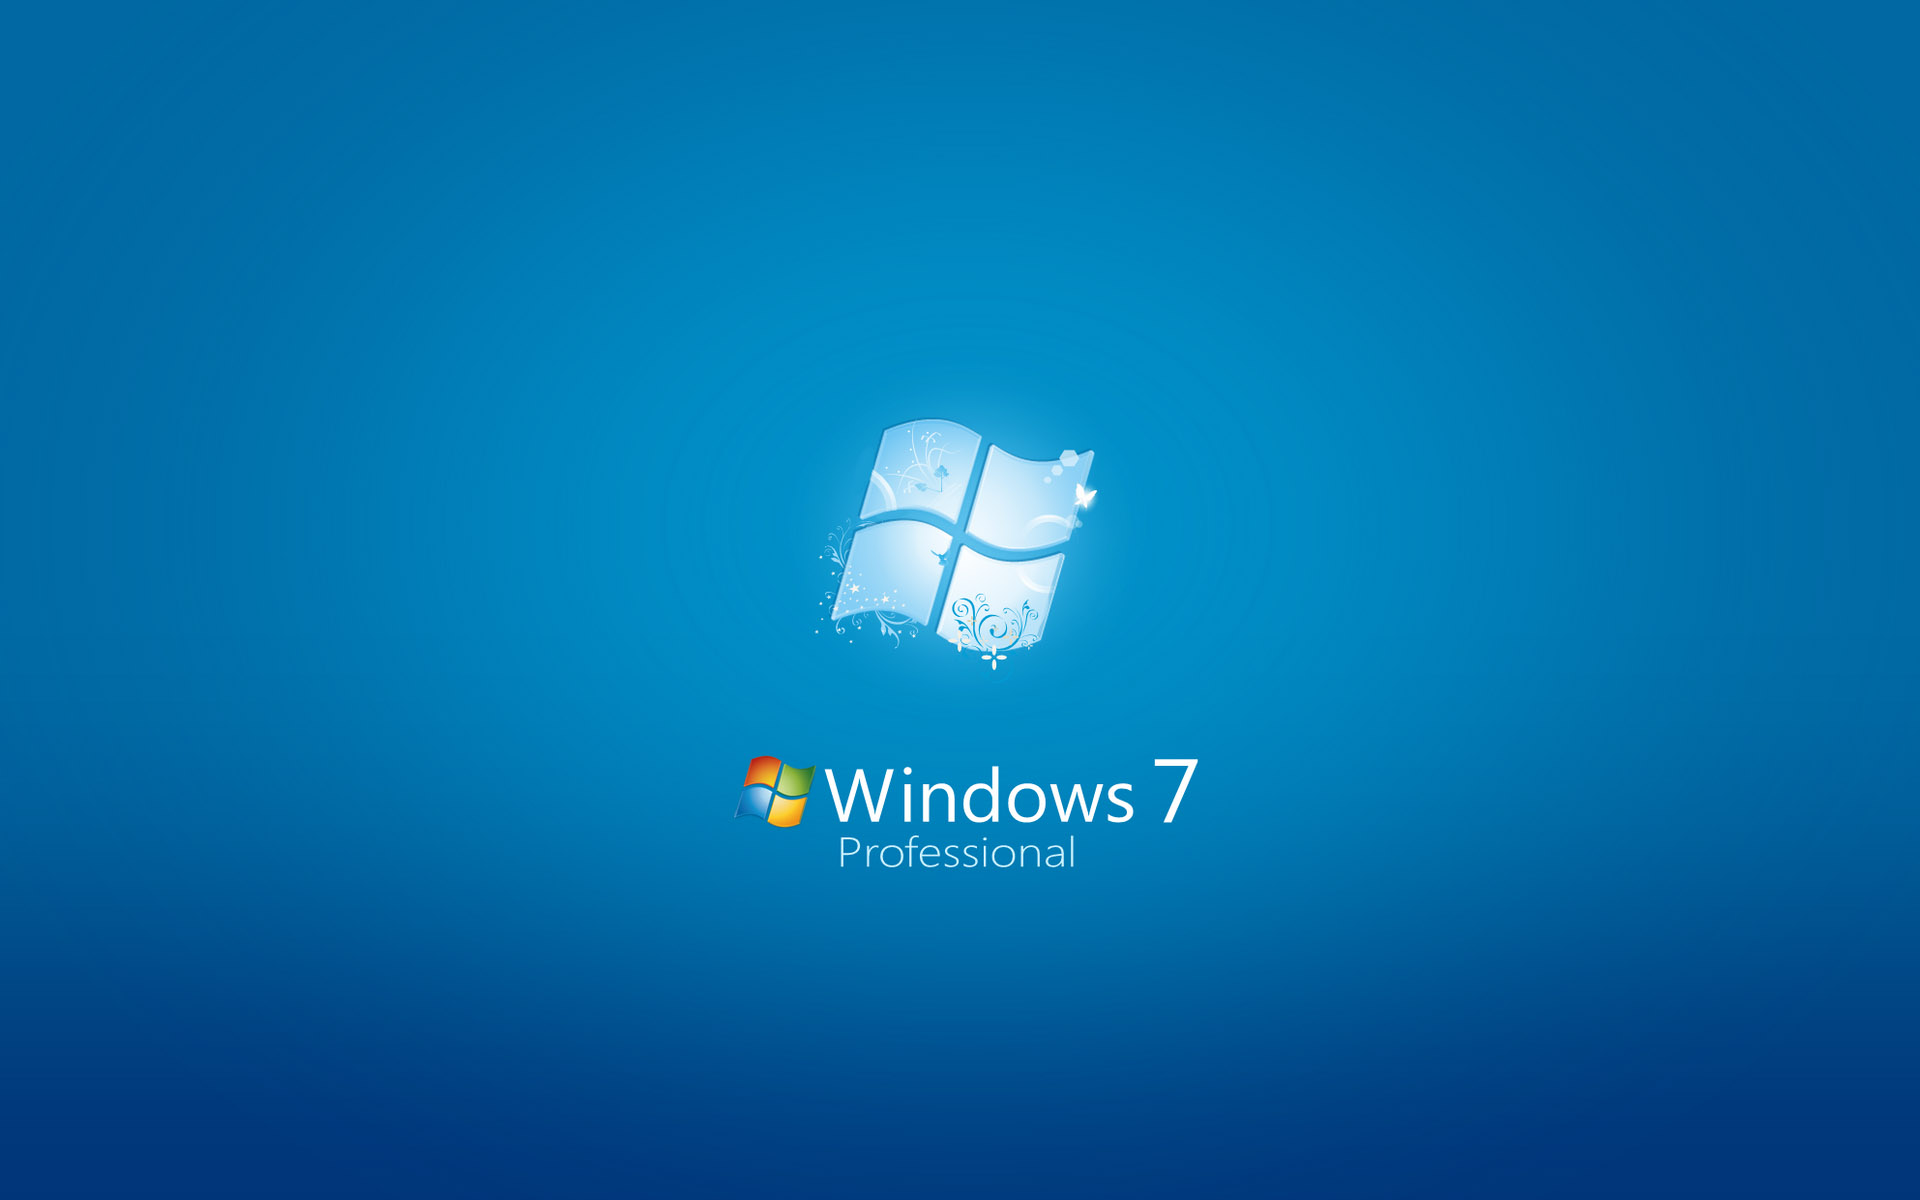 壁纸1920x1200Windows7 5 10壁纸 Windows7壁纸 Windows7图片 Windows7素材 系统壁纸 系统图库 系统图片素材桌面壁纸